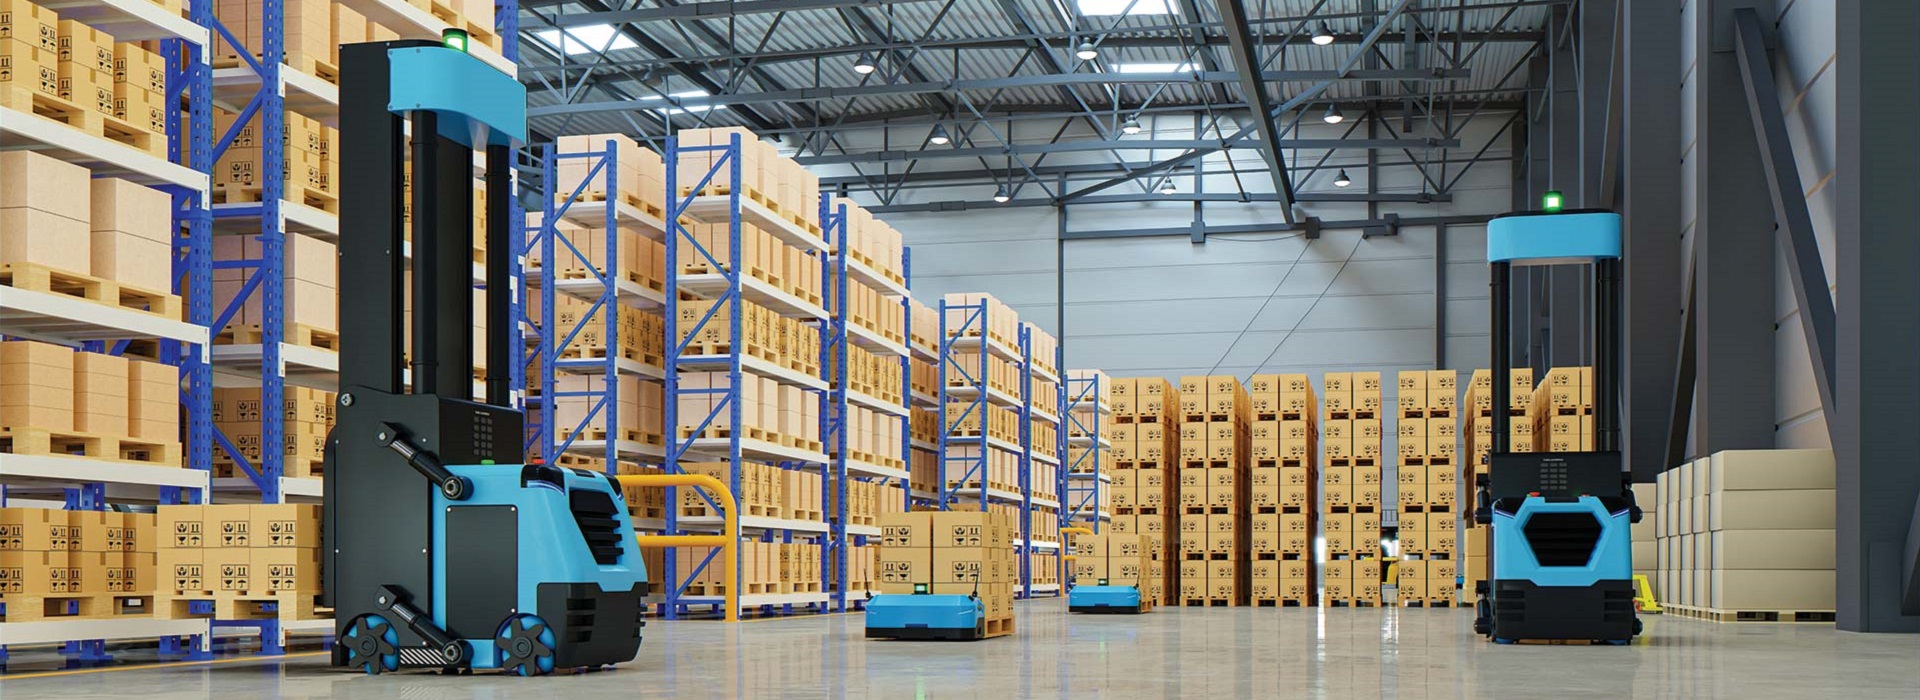 Pallet racks, warehouse shelves, warehouse equipment | Lava systems